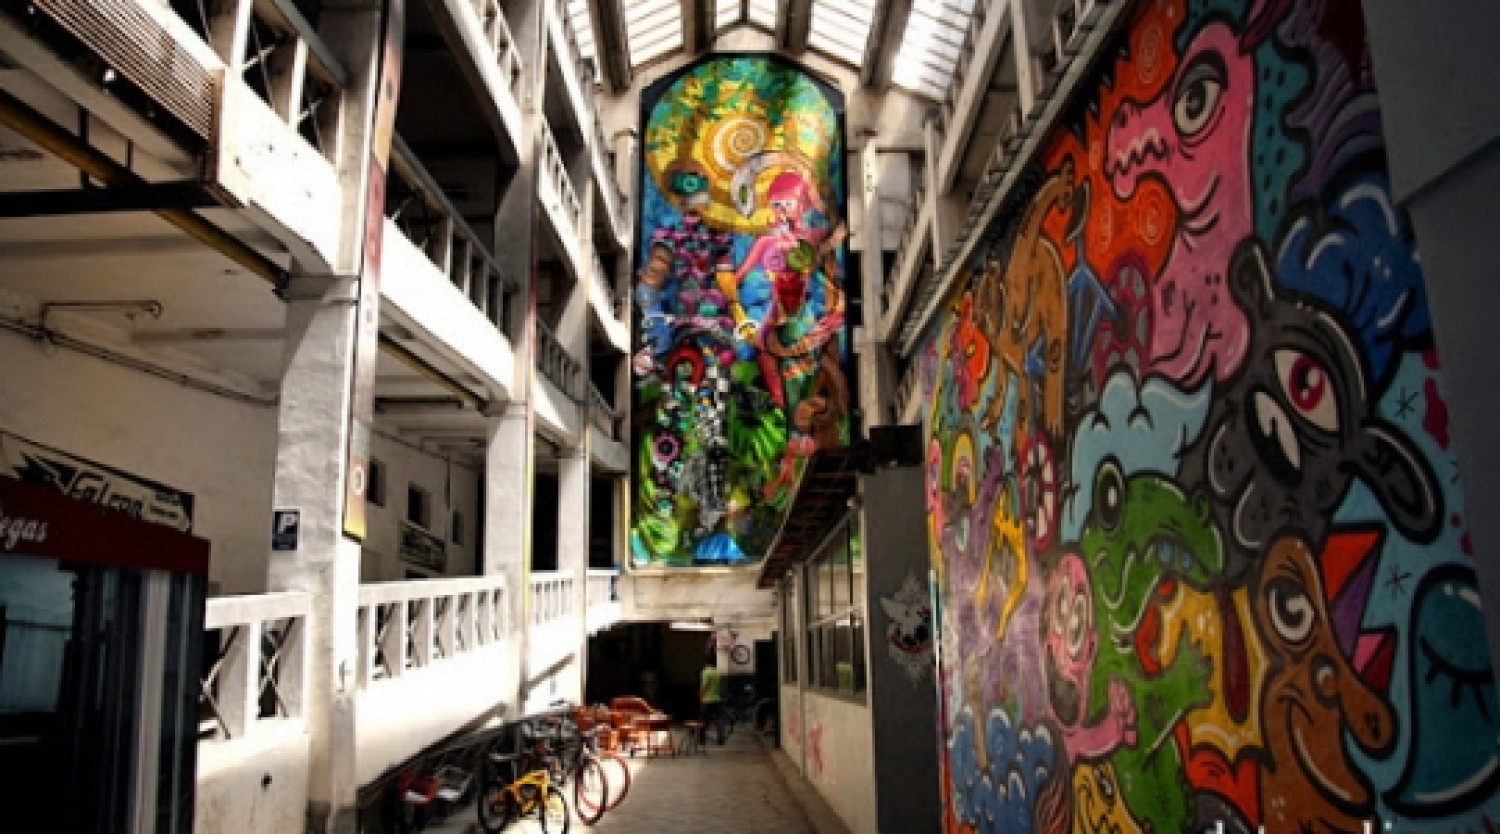 Alternative Bucharest - street art & urban culture tour